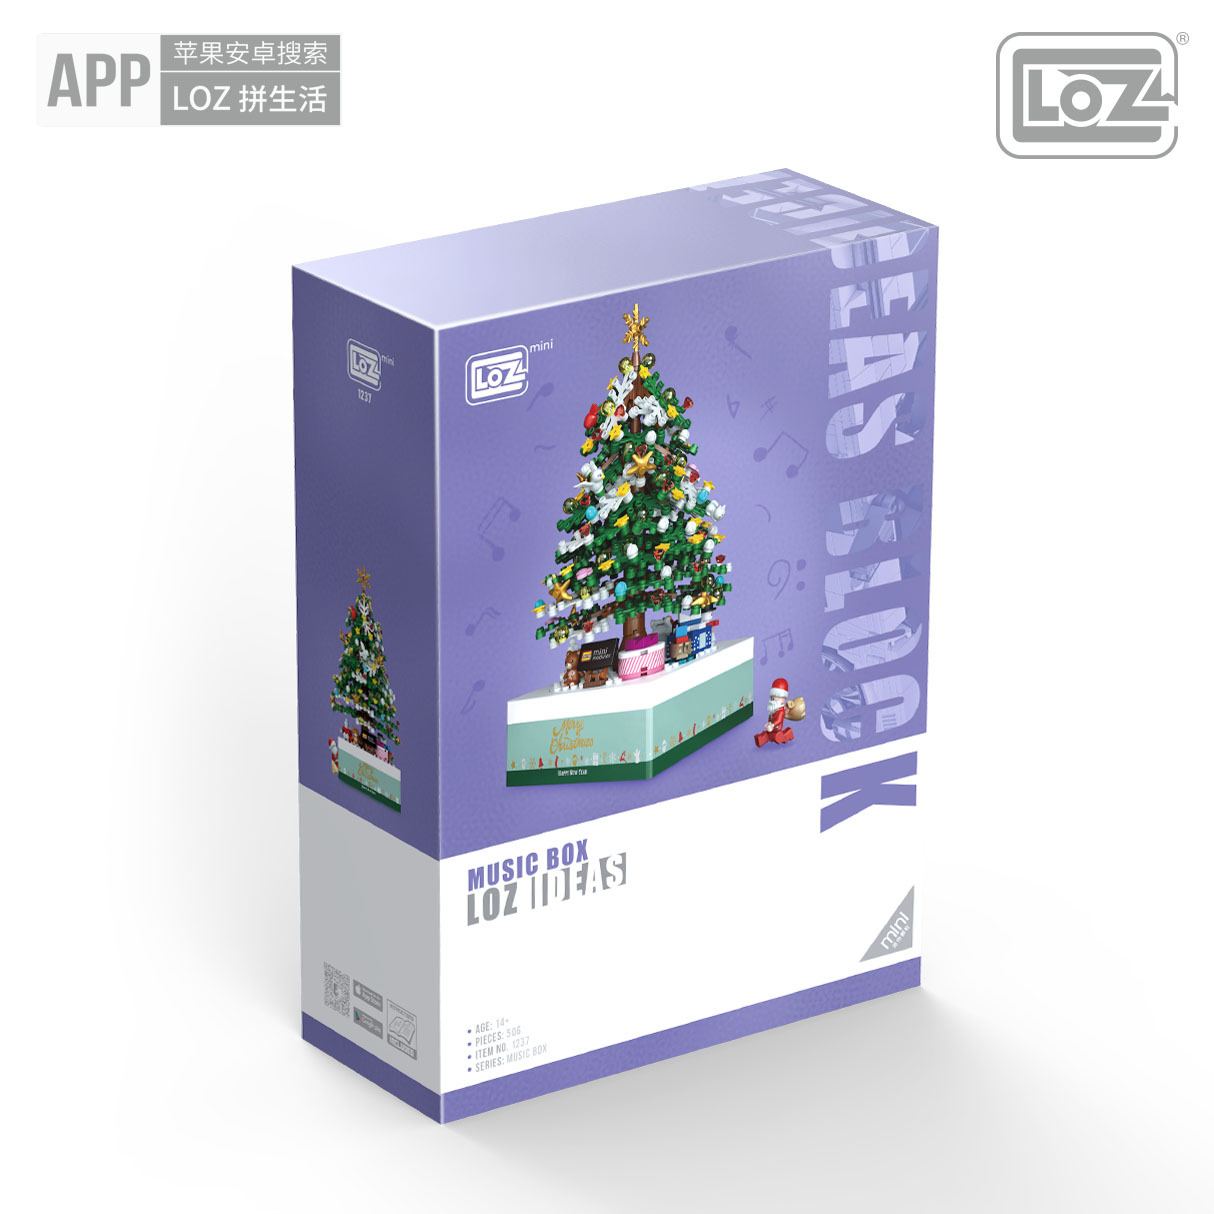 Mini Blocks LOZ Christmas Tree Music Box Educational Toy Hobbies Christmas Gifts (#1237)